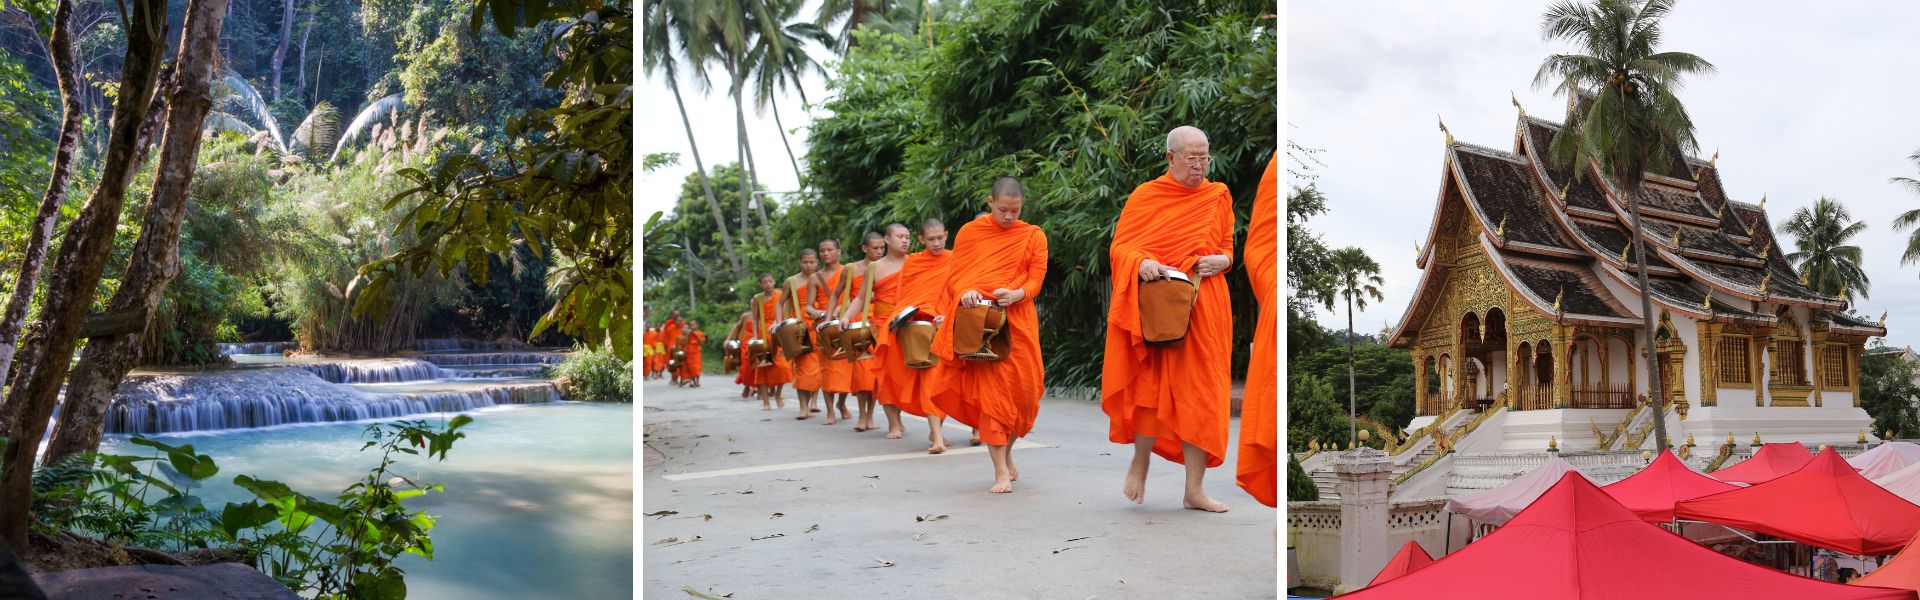 Luang-Prabang: Sehenswürdigkeiten und Aktivitäten  | Laos Reisen